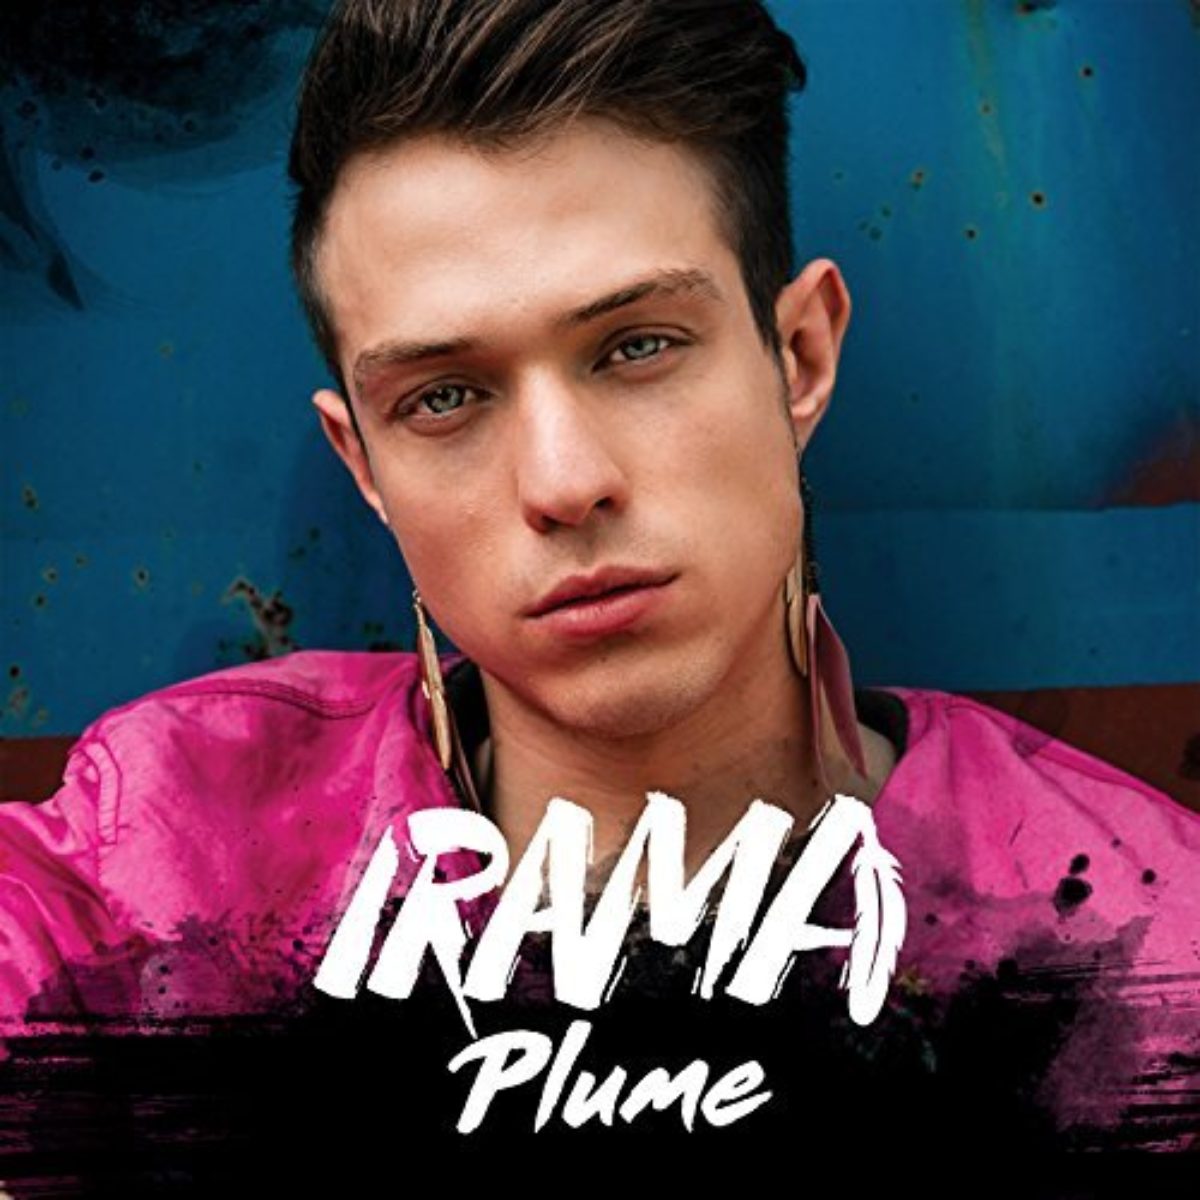 Irama-Plume-EP-amici-2017-1200x1200.jpg